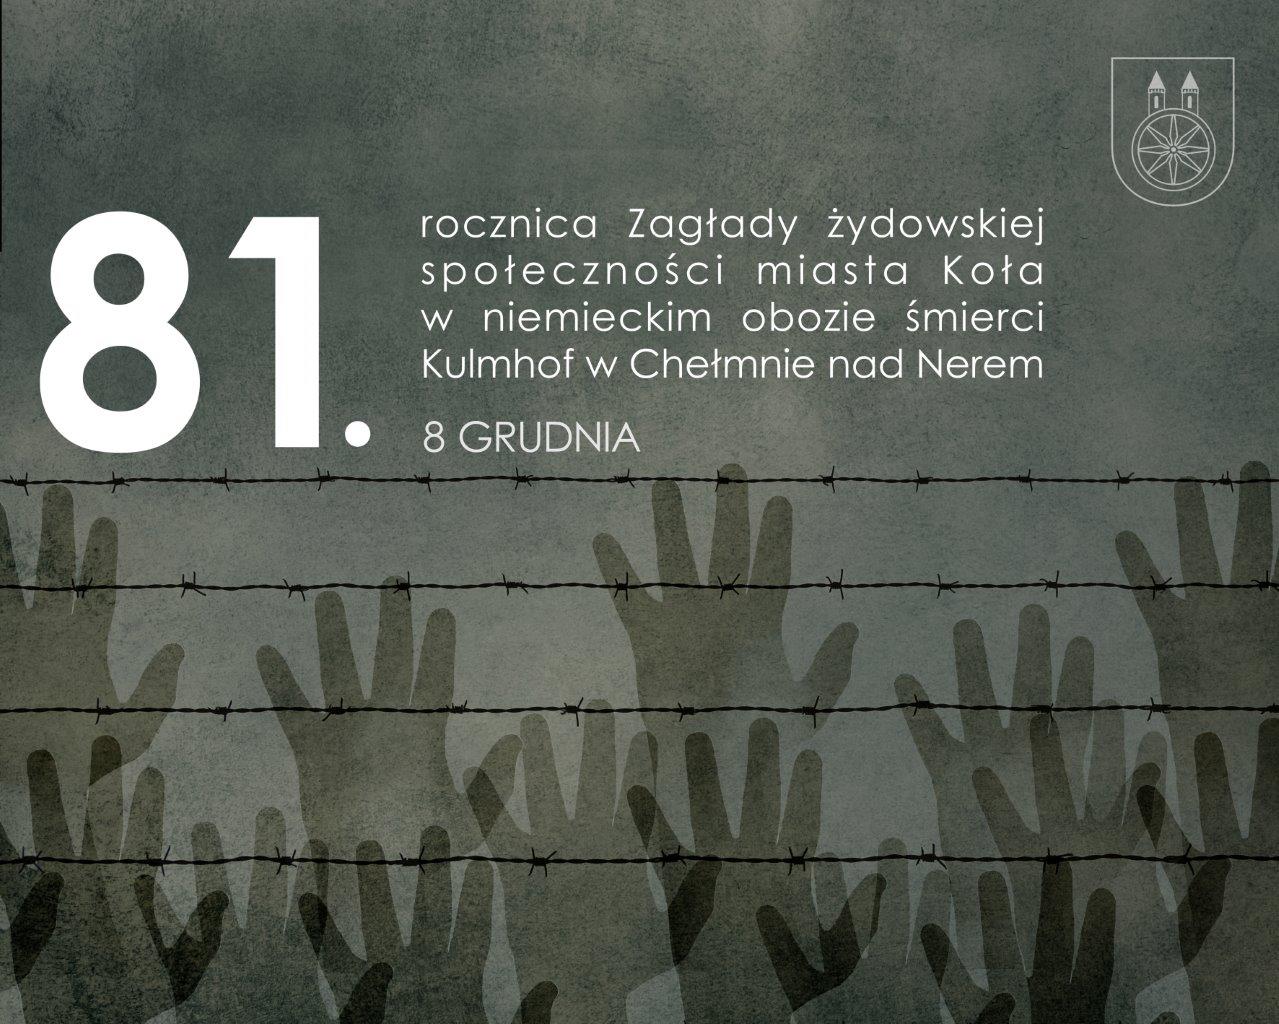 Plansza 8 GRUDNIA 81. rocznicA Zagłady żydowskiej społeczności miasta Koła